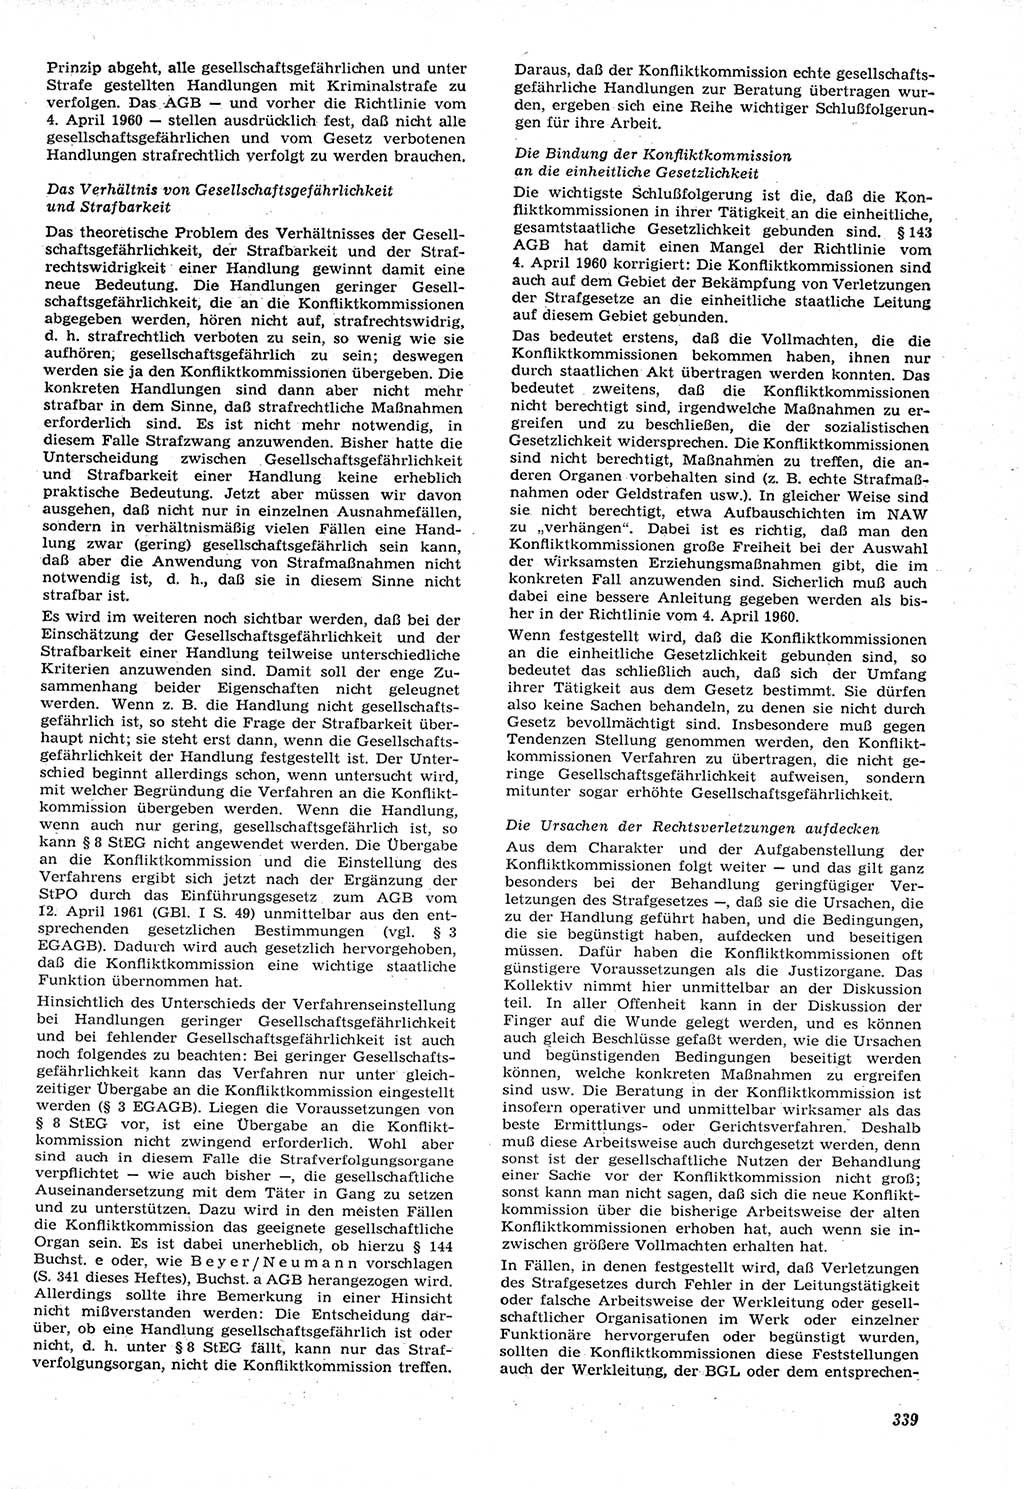 Neue Justiz (NJ), Zeitschrift für Recht und Rechtswissenschaft [Deutsche Demokratische Republik (DDR)], 15. Jahrgang 1961, Seite 339 (NJ DDR 1961, S. 339)